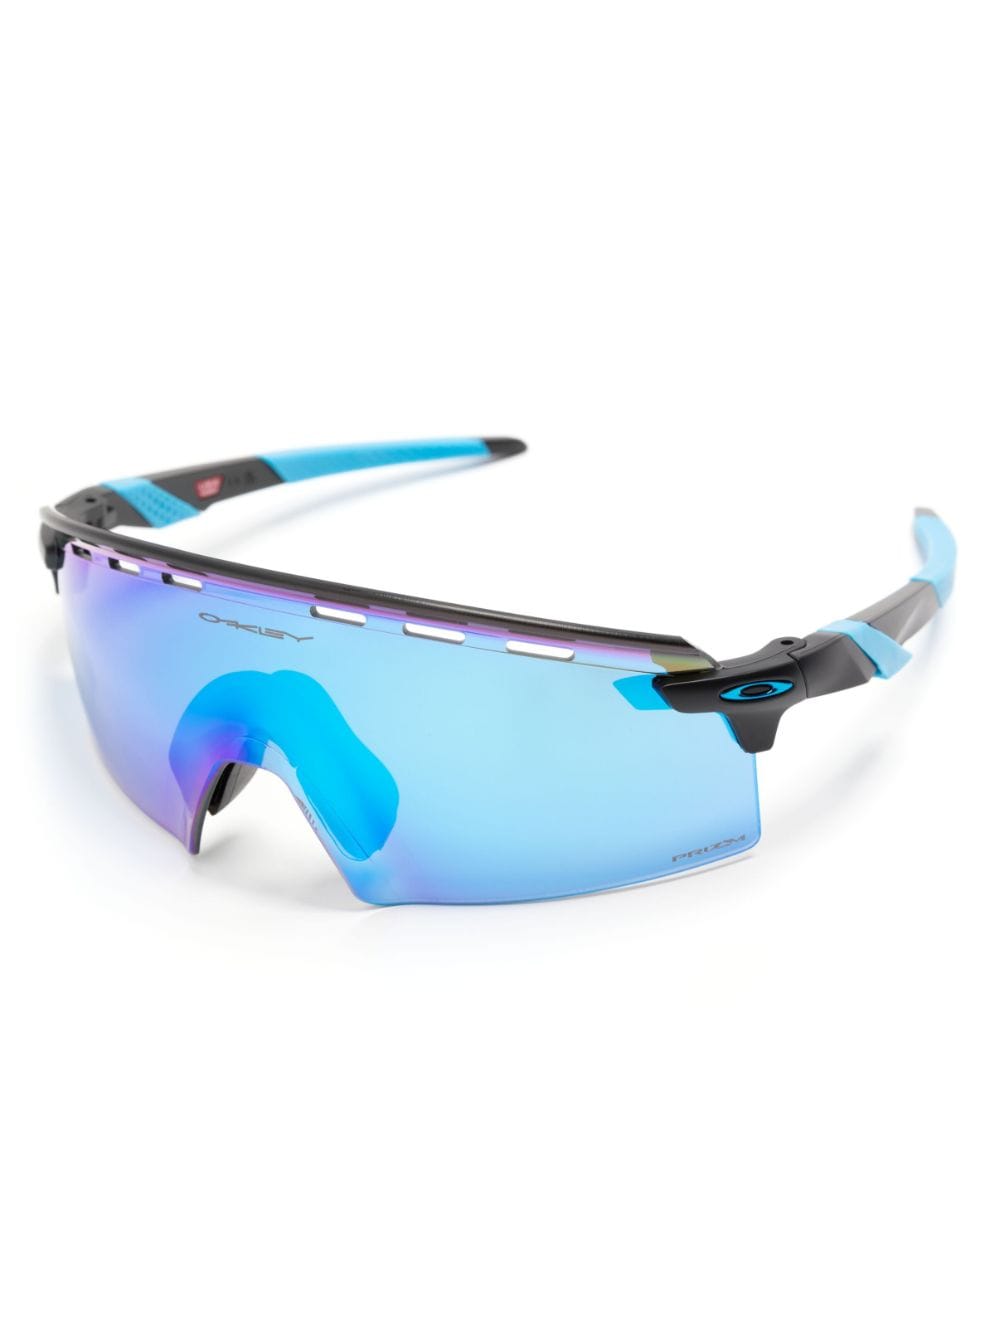 Oakley Encoder Strike zonnebril met shield montuur - Zwart